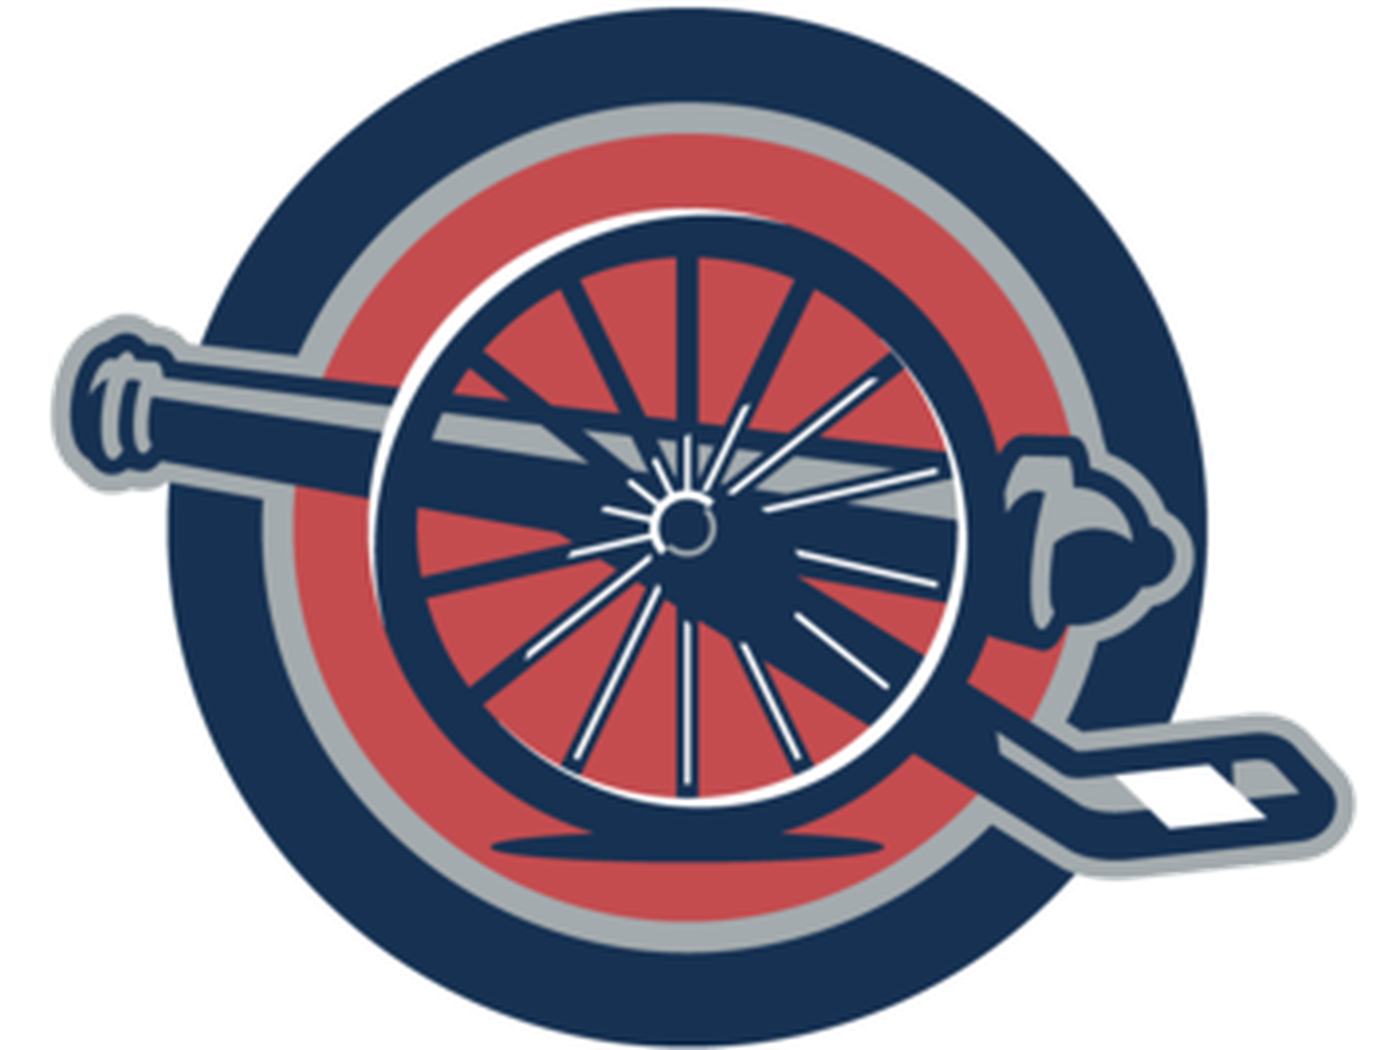 The Cannon Logo Design Contest.